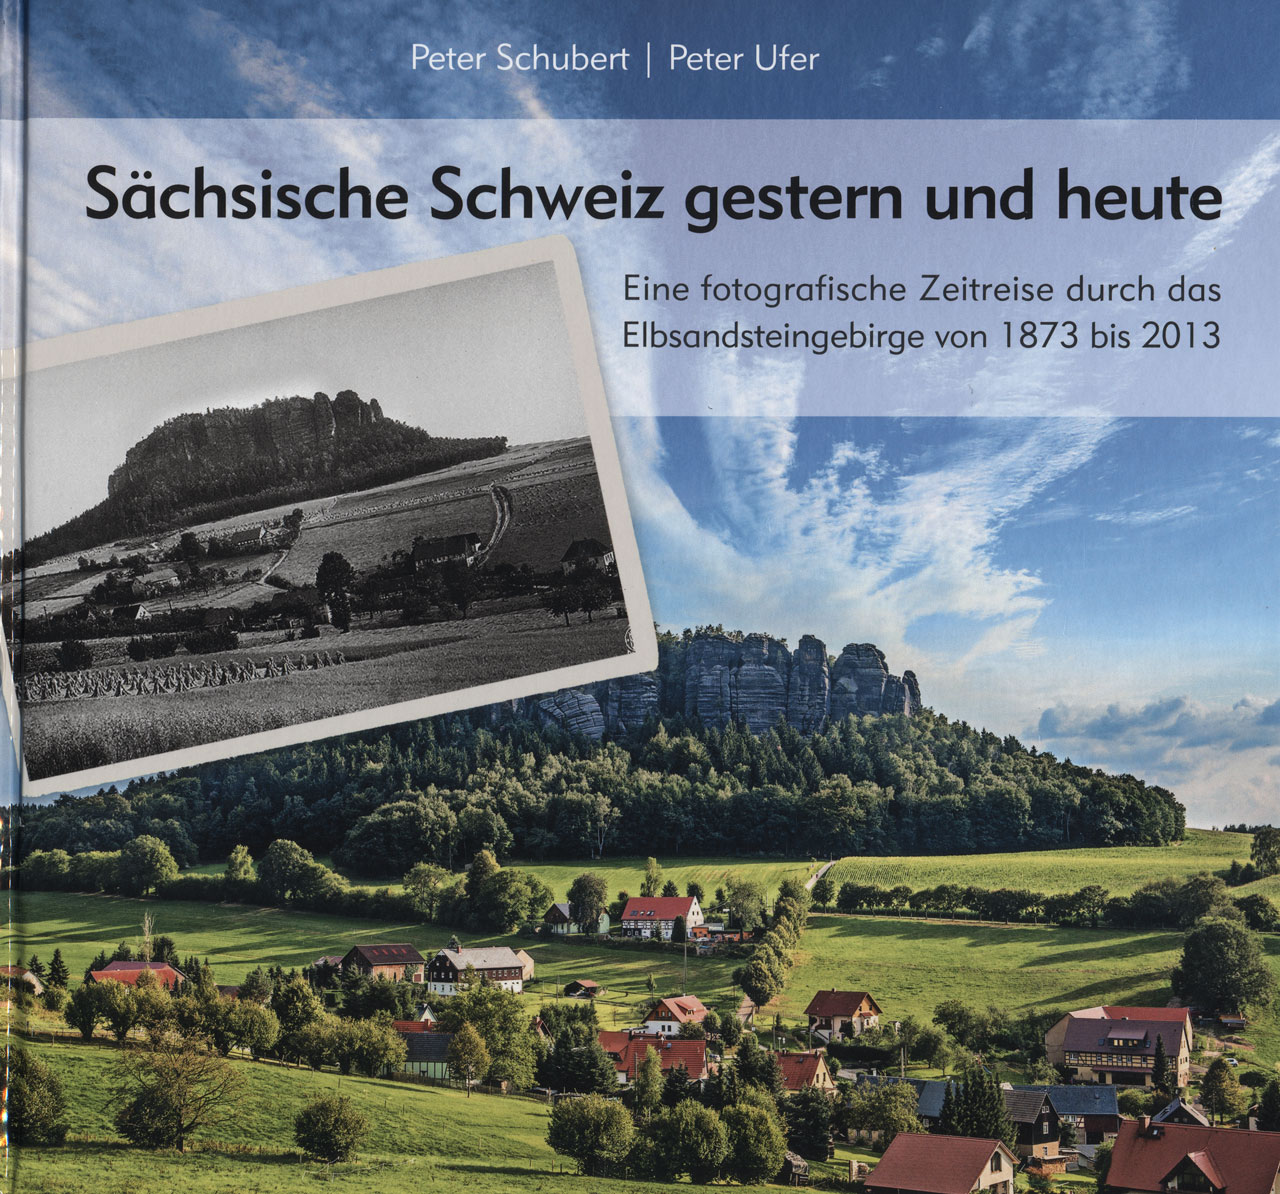 Sächsische Schweiz gestern und heute 
Peter Schubert & Peter Ufer